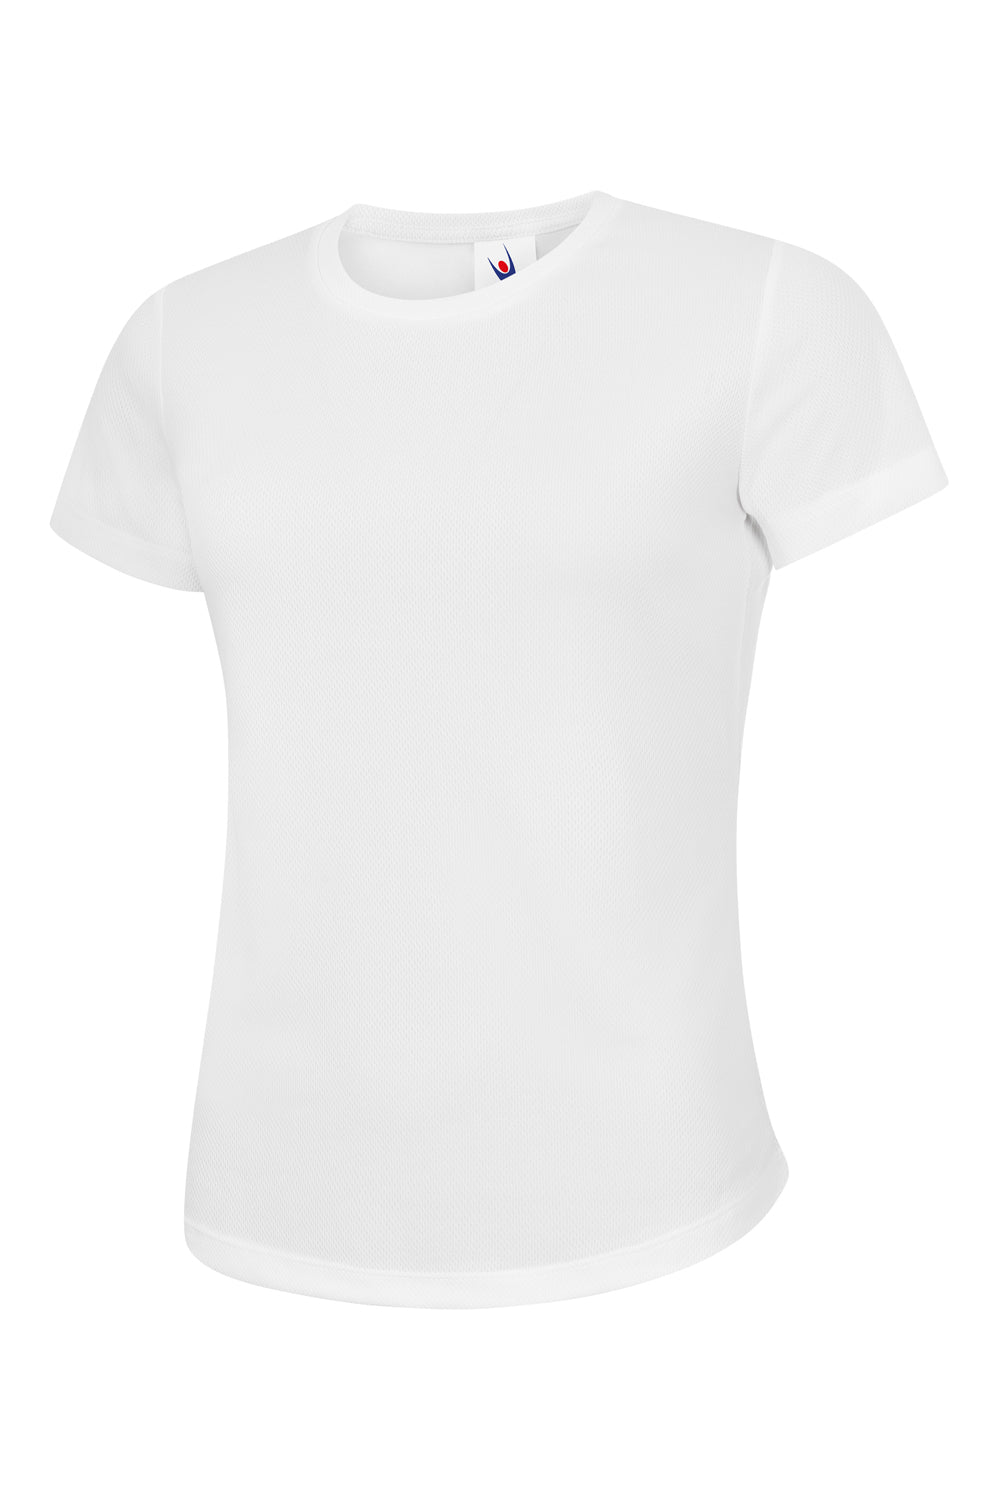 T-shirt respirant femme - La boutique de l'Université de Rouen Normandie